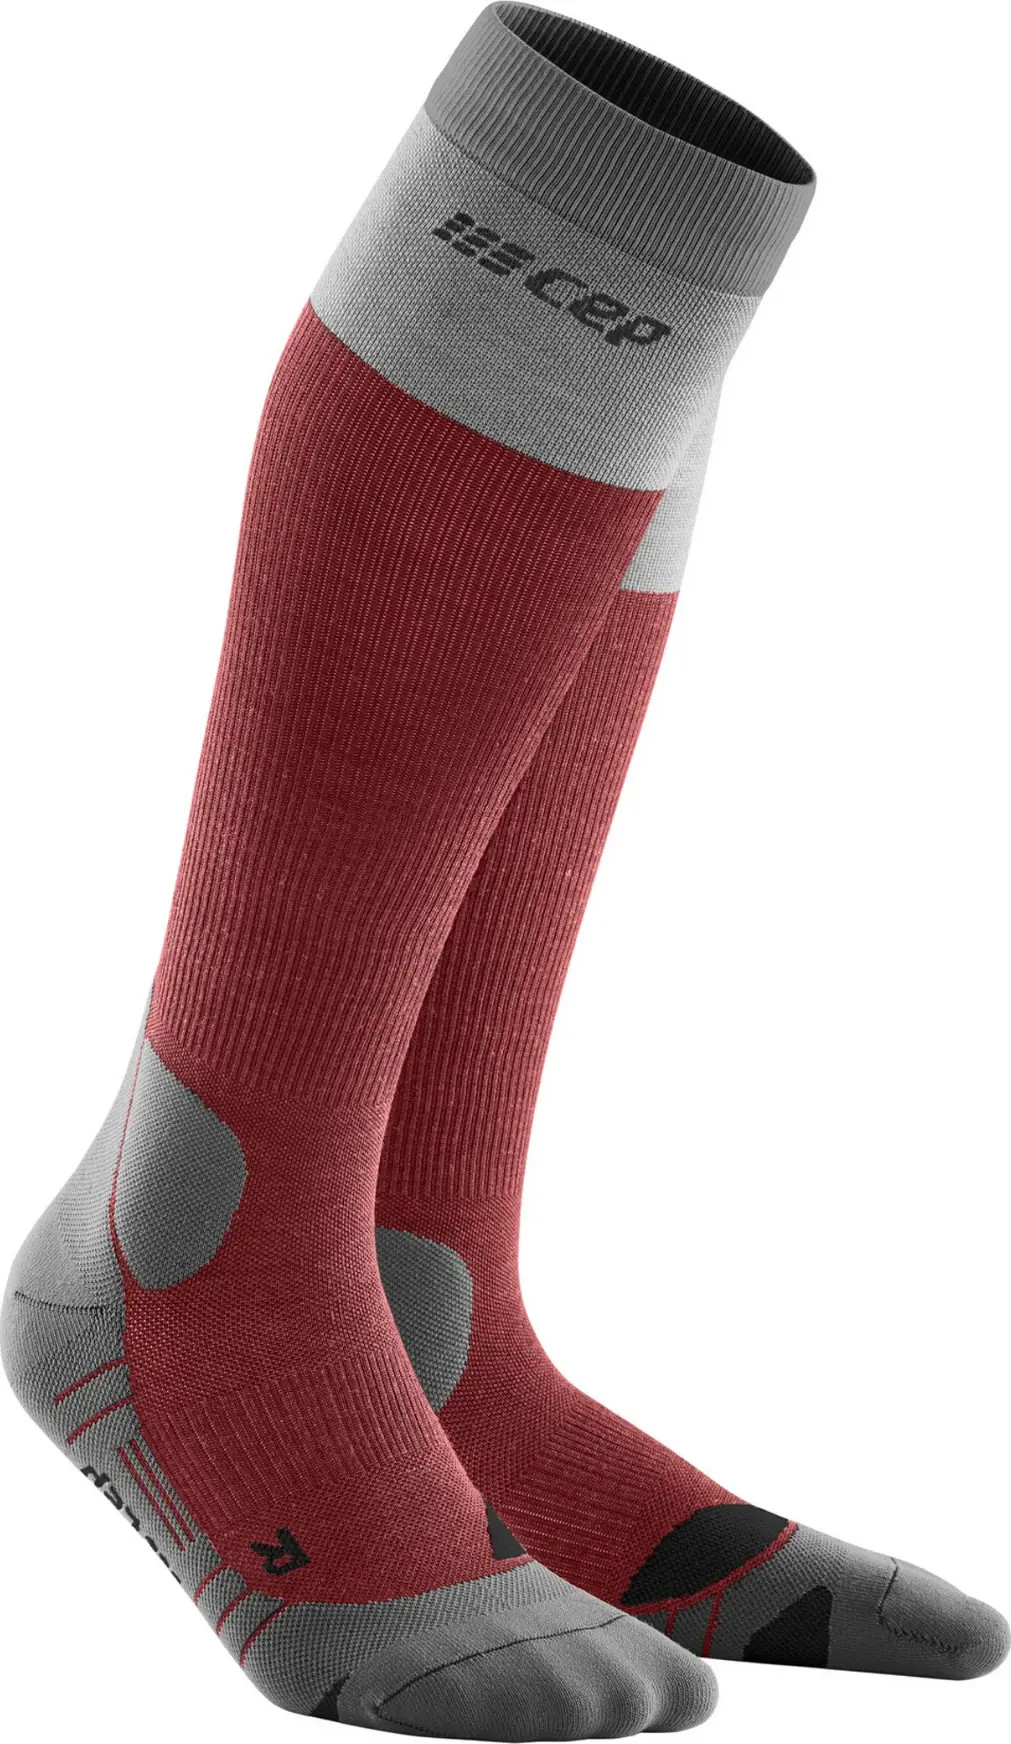 Women's Hiking Light Merino Socks Berry/Grey